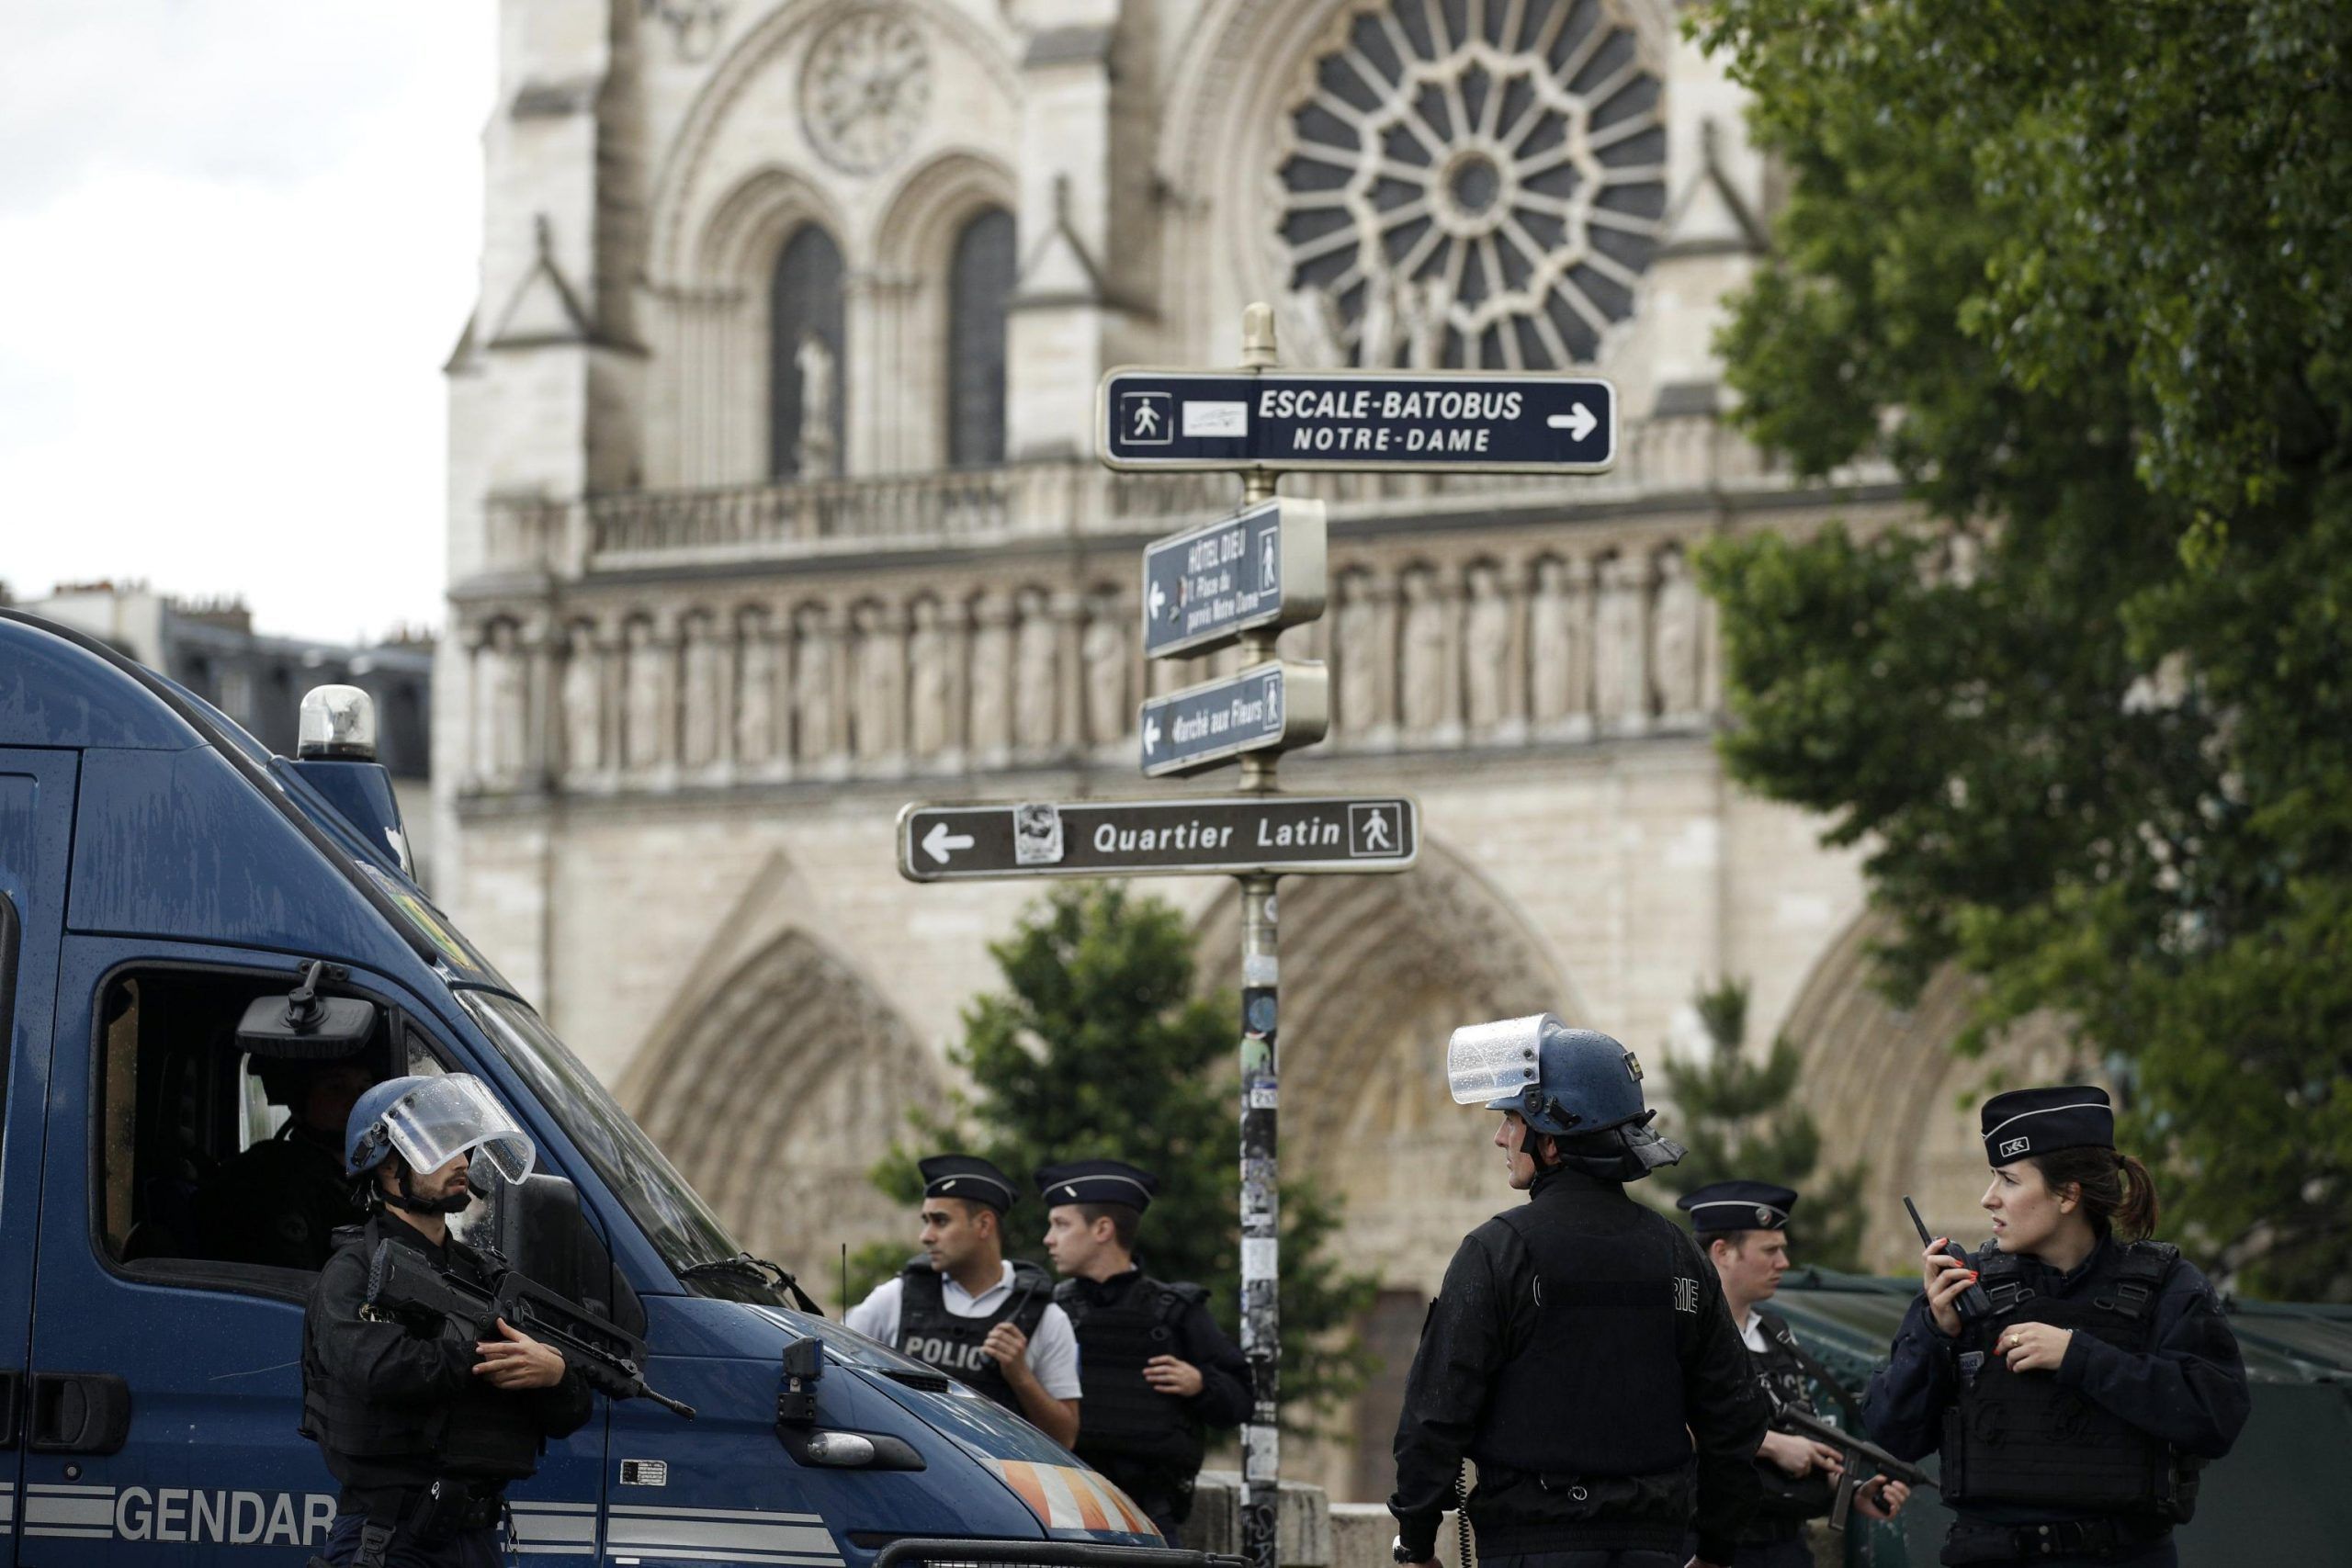 Attentato Parigi a Notre-Dame: l’aggressore era un giornalista algerino fedele all’Isis